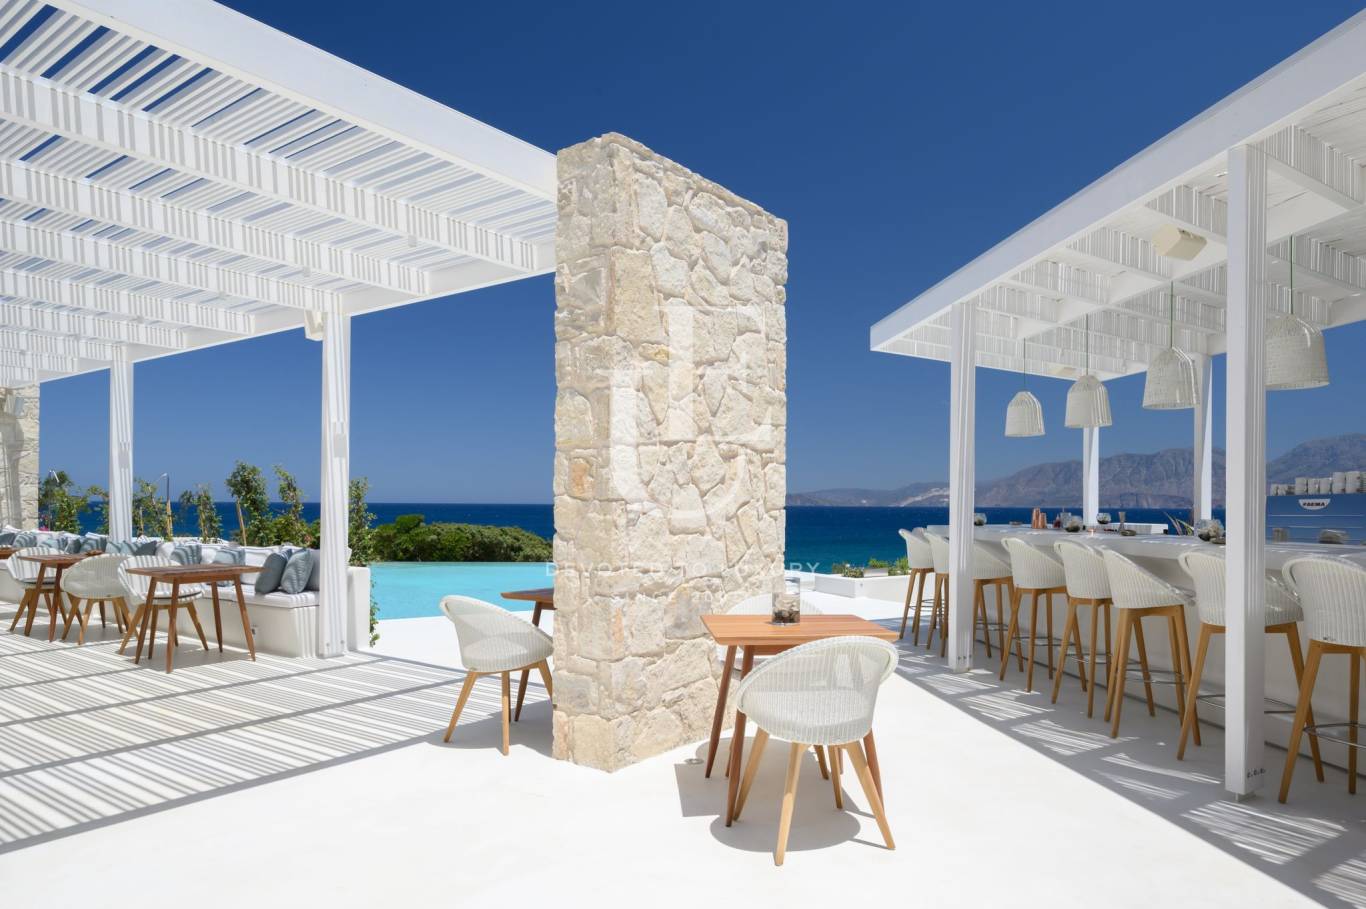 Хотел / Apartment house за продажба в остров Крит,  - код на имота: N21077 - image 3